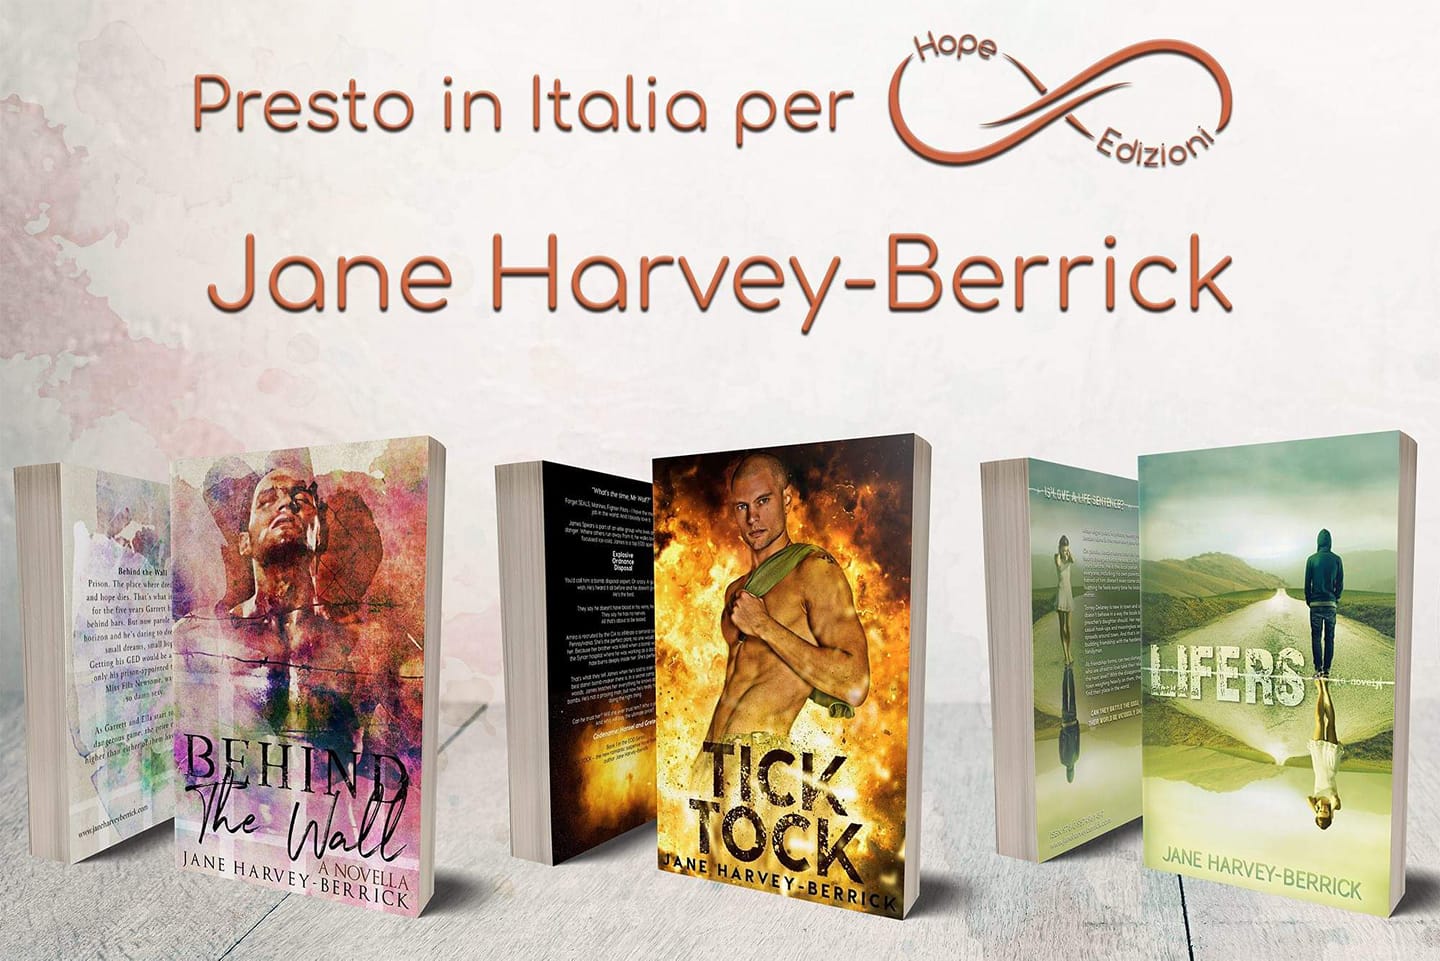 Presto in Italia… Jane Harvey-Berrick!